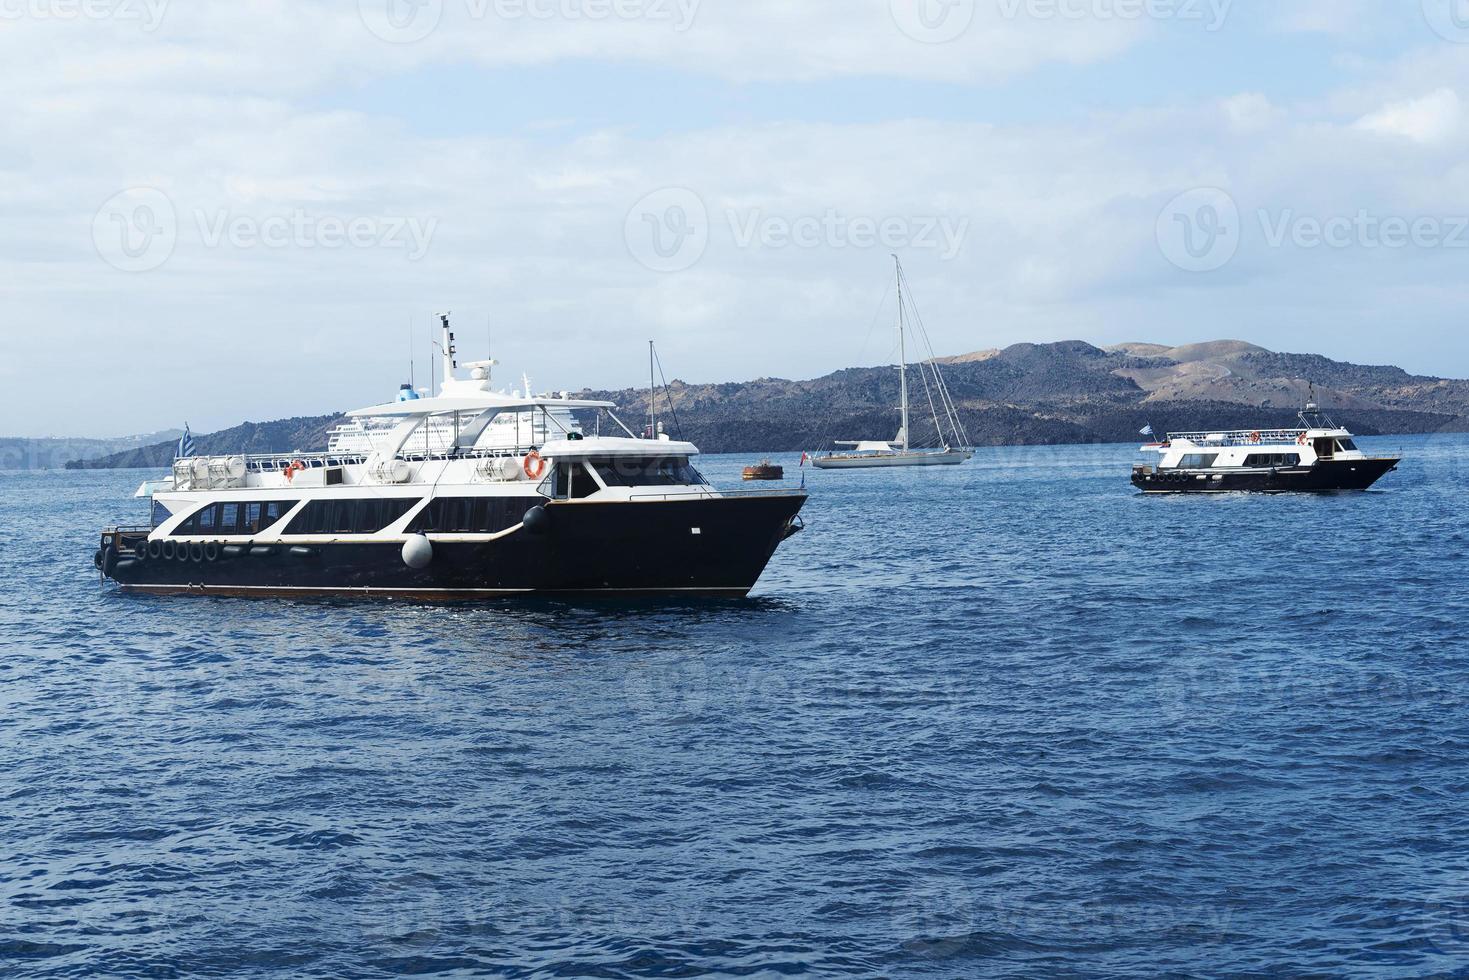 barco de pasajeros cerca de la isla de santorini. foto